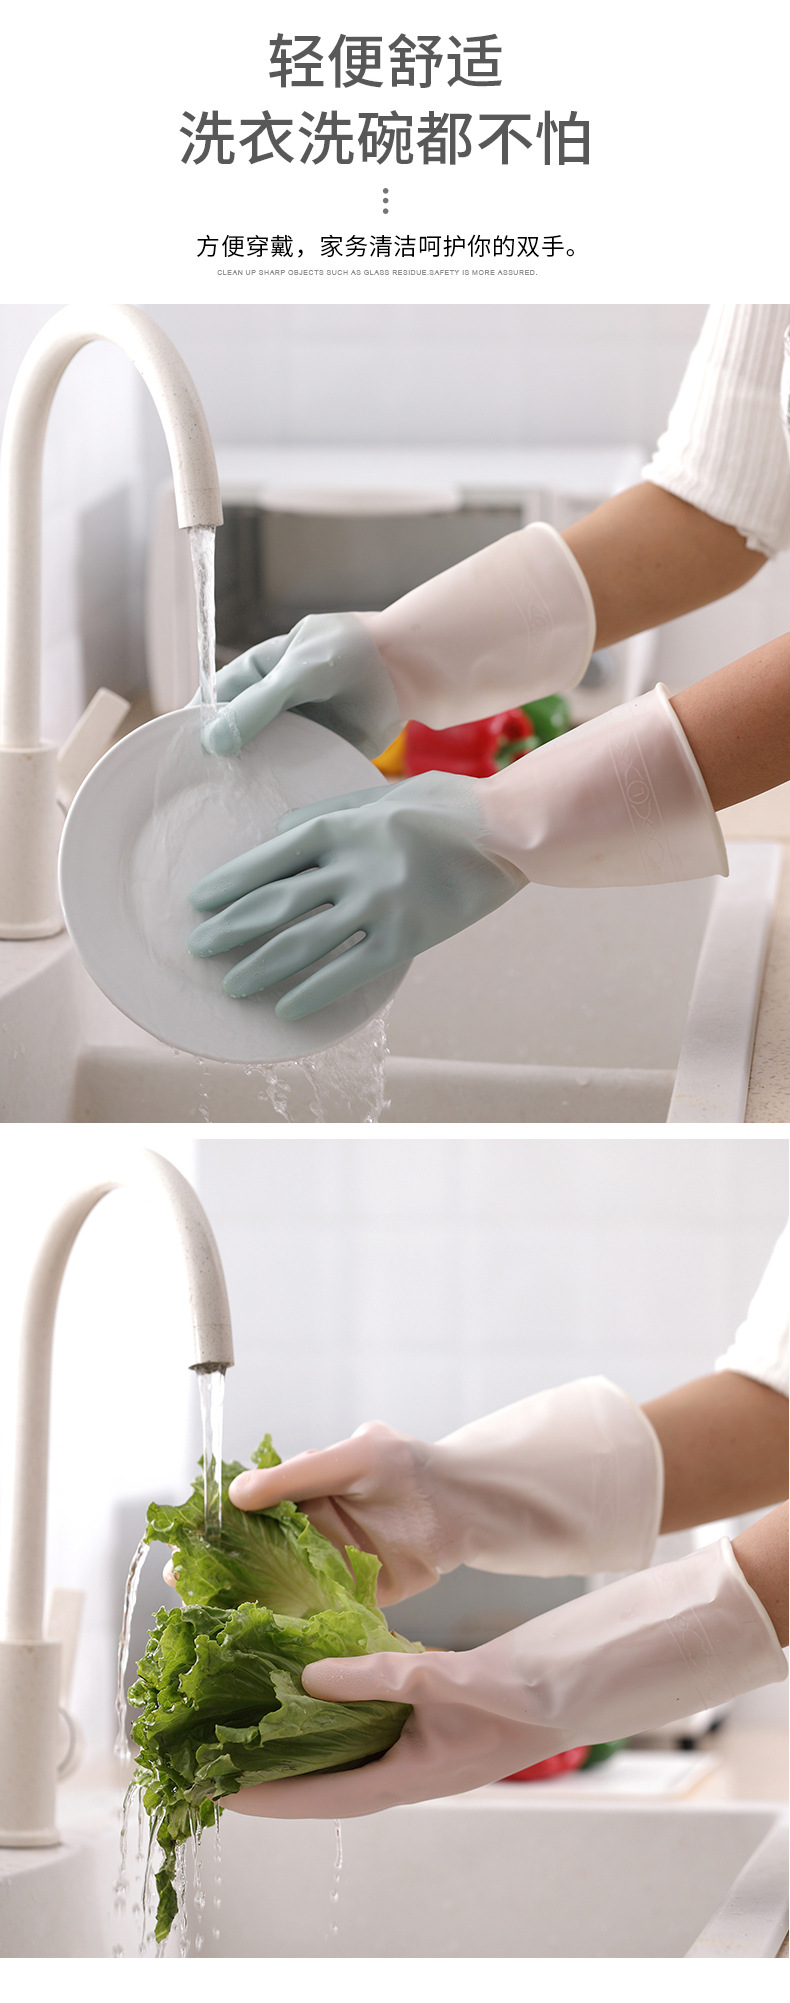 半透明橡膠手套 居家清潔手套 防滑耐用廚房手套 洗衣洗碗手套3